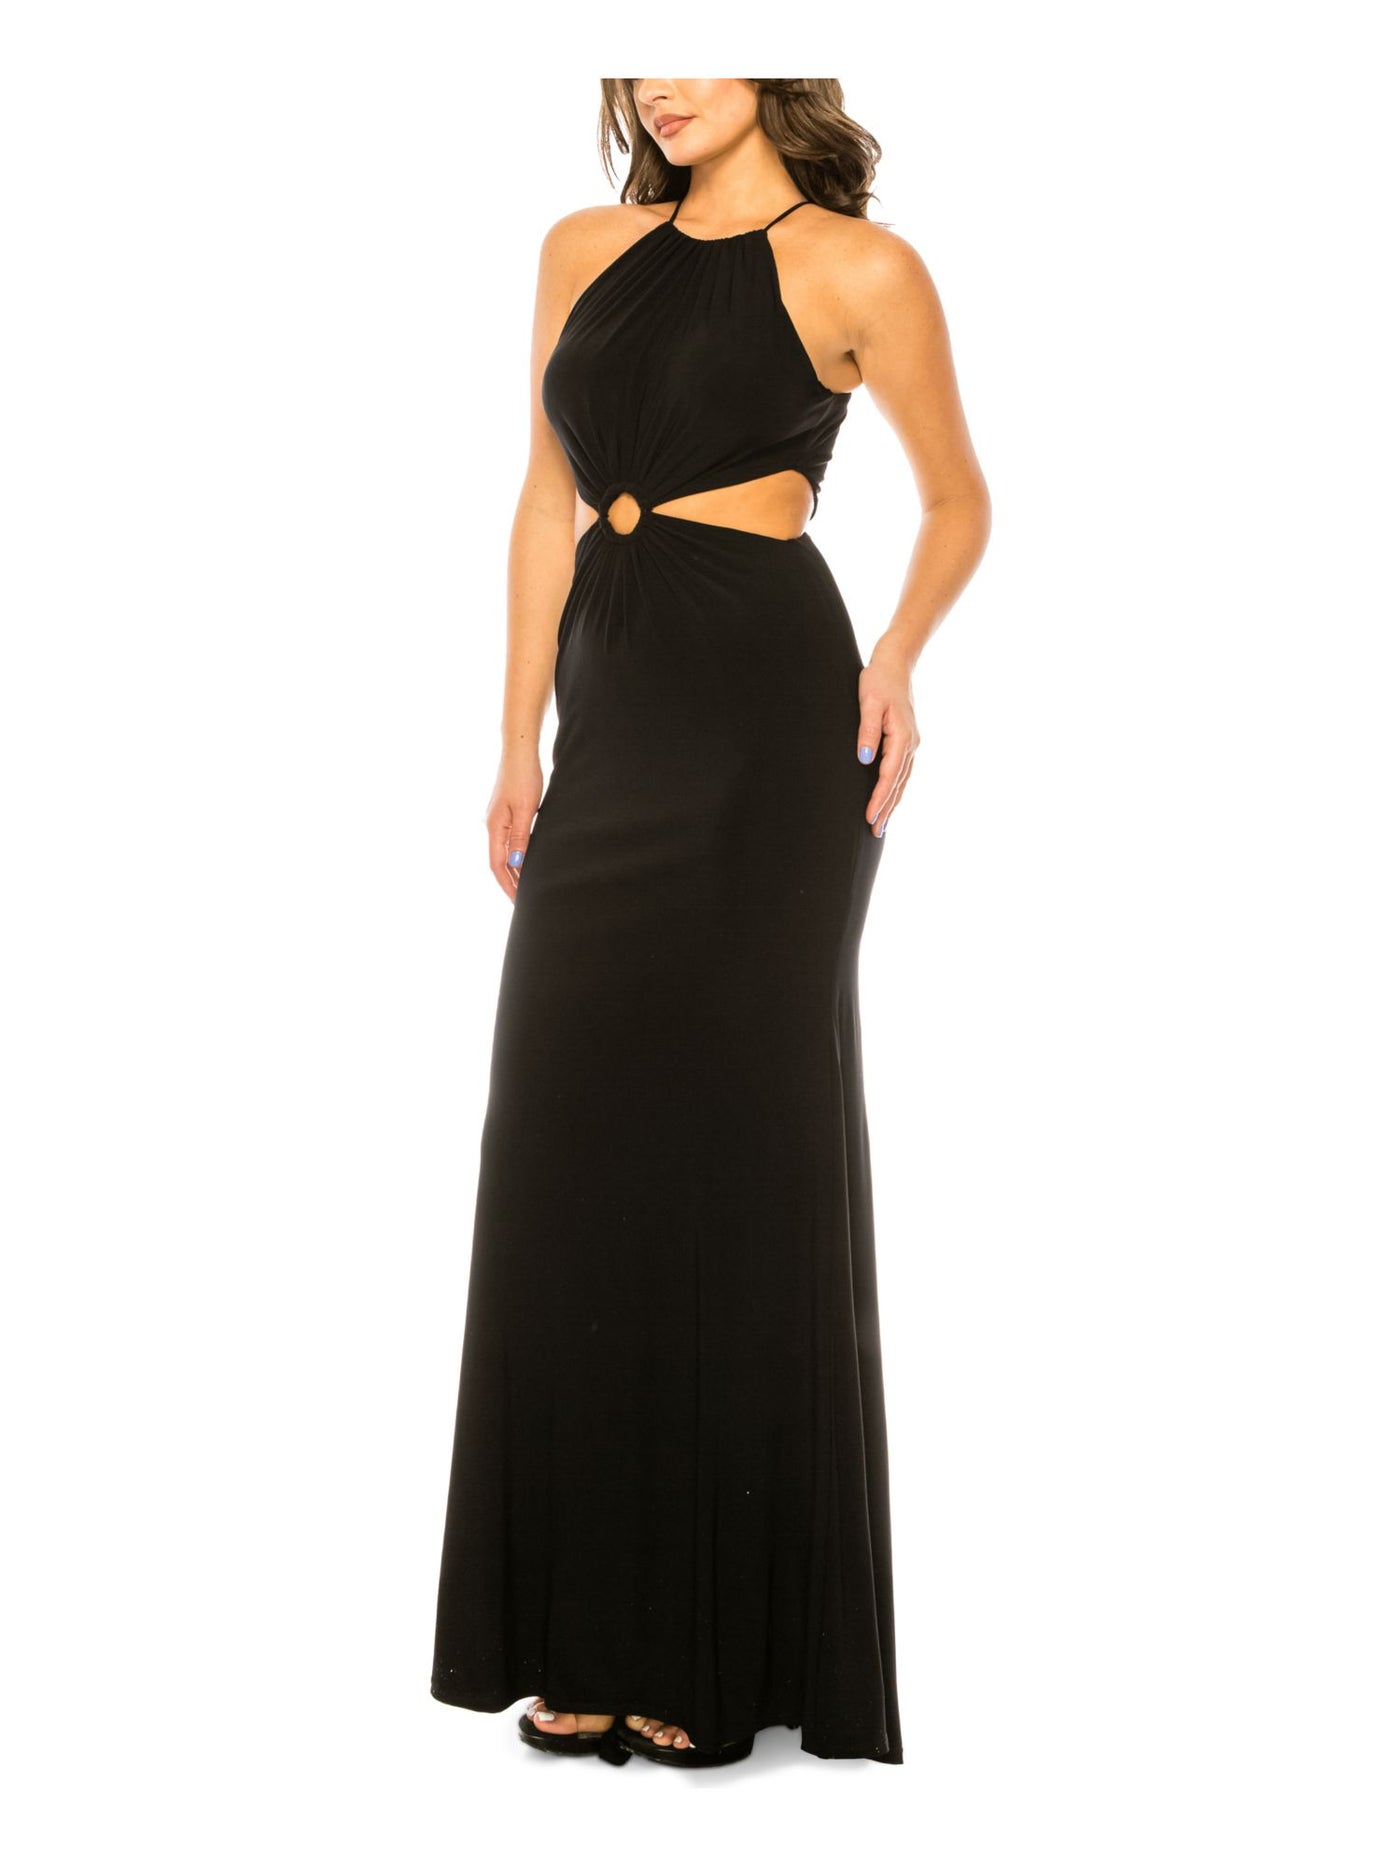 B DARLIN Womens Black Cut Out Zippered Sleeveless Halter Full-Length Evening Gown Dress Juniors S